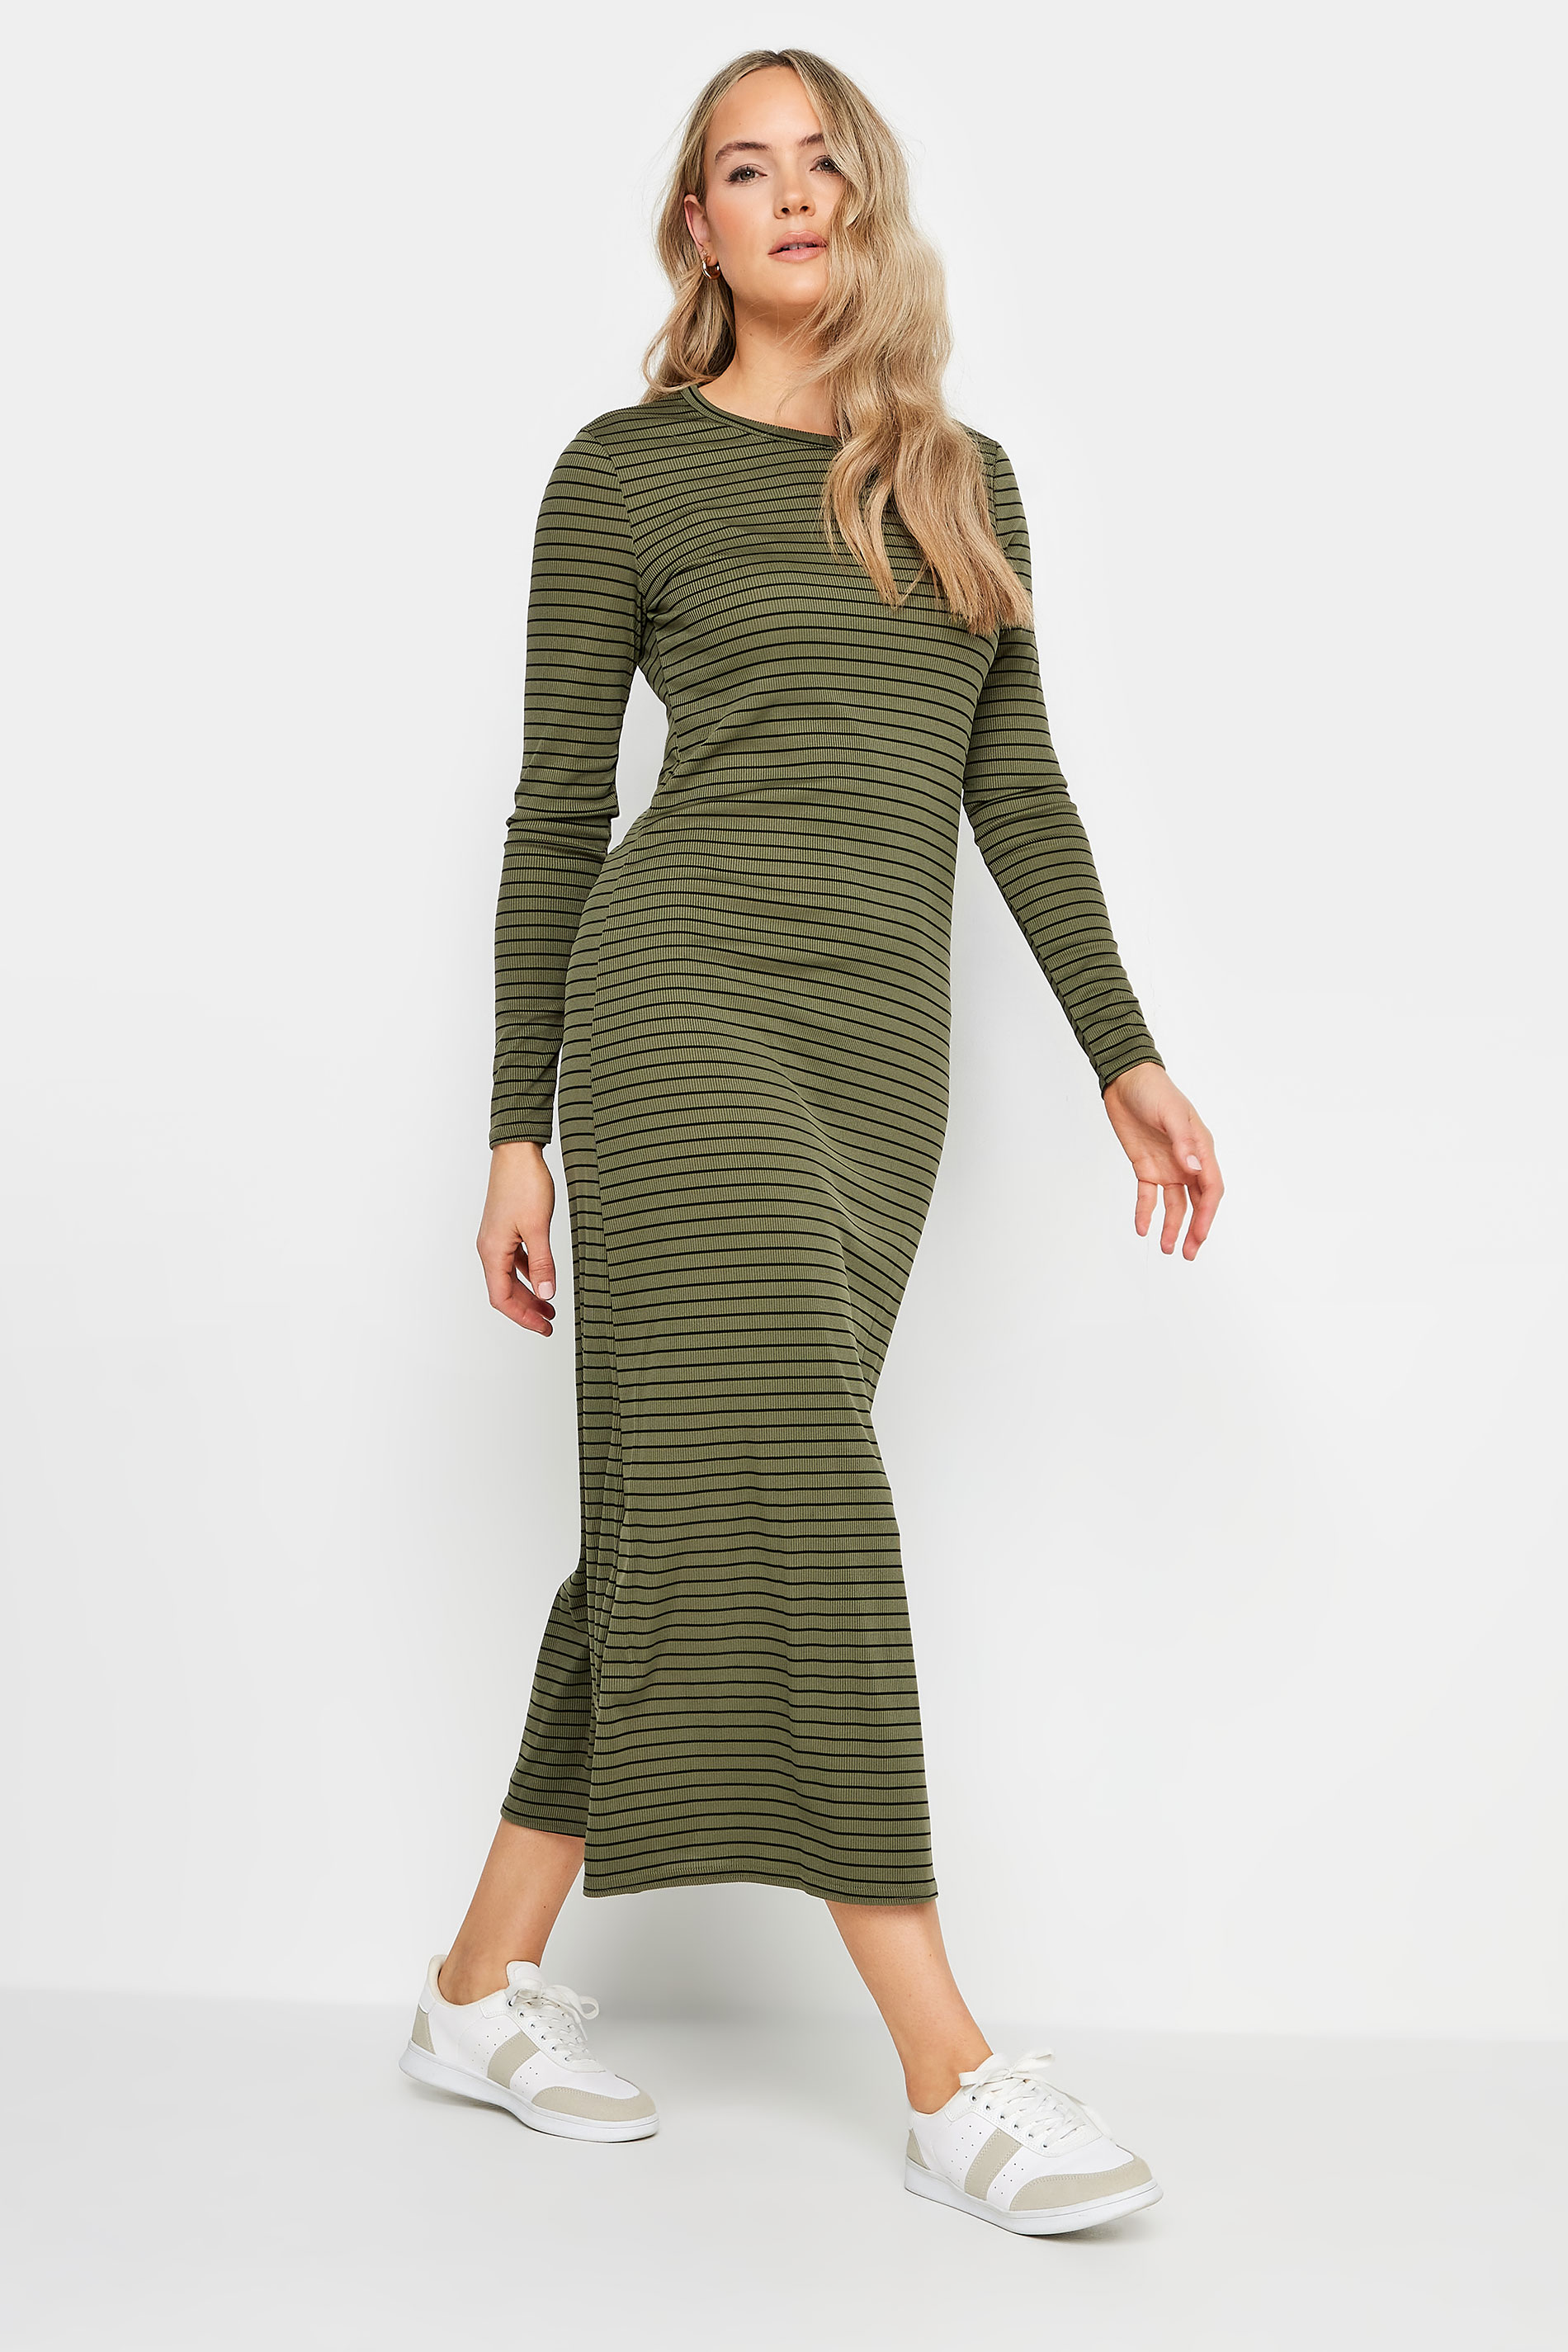 LTS Tall Womens Khaki Green & Black Stripe Ribbed Midi Dress | Long Tall Sally  2